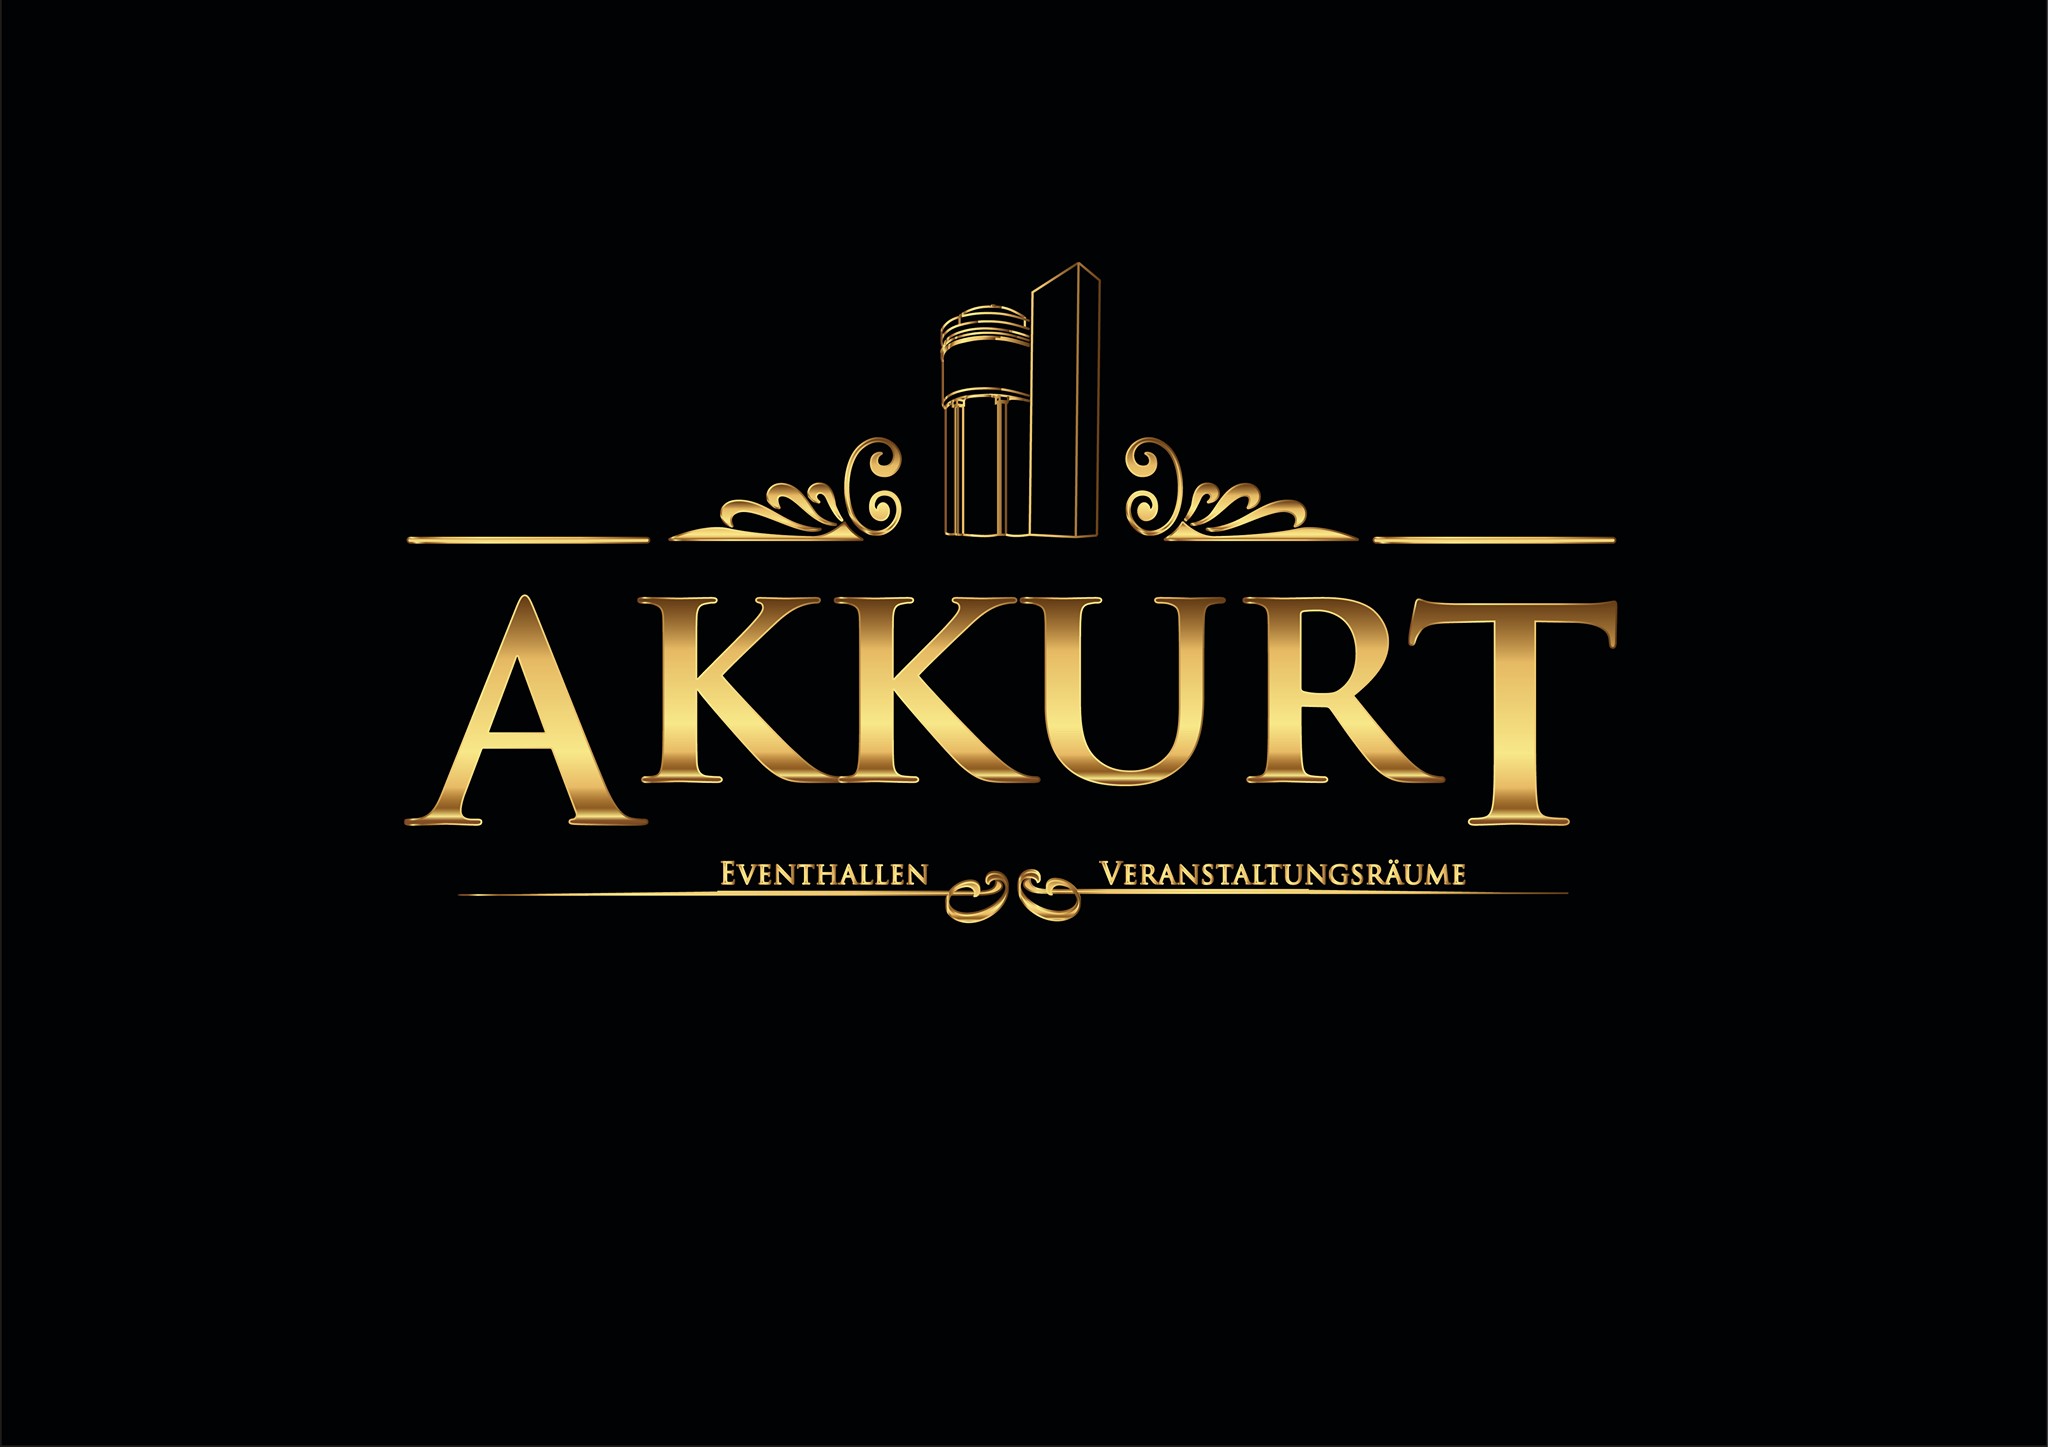 Akkurt Water Tower GmbH